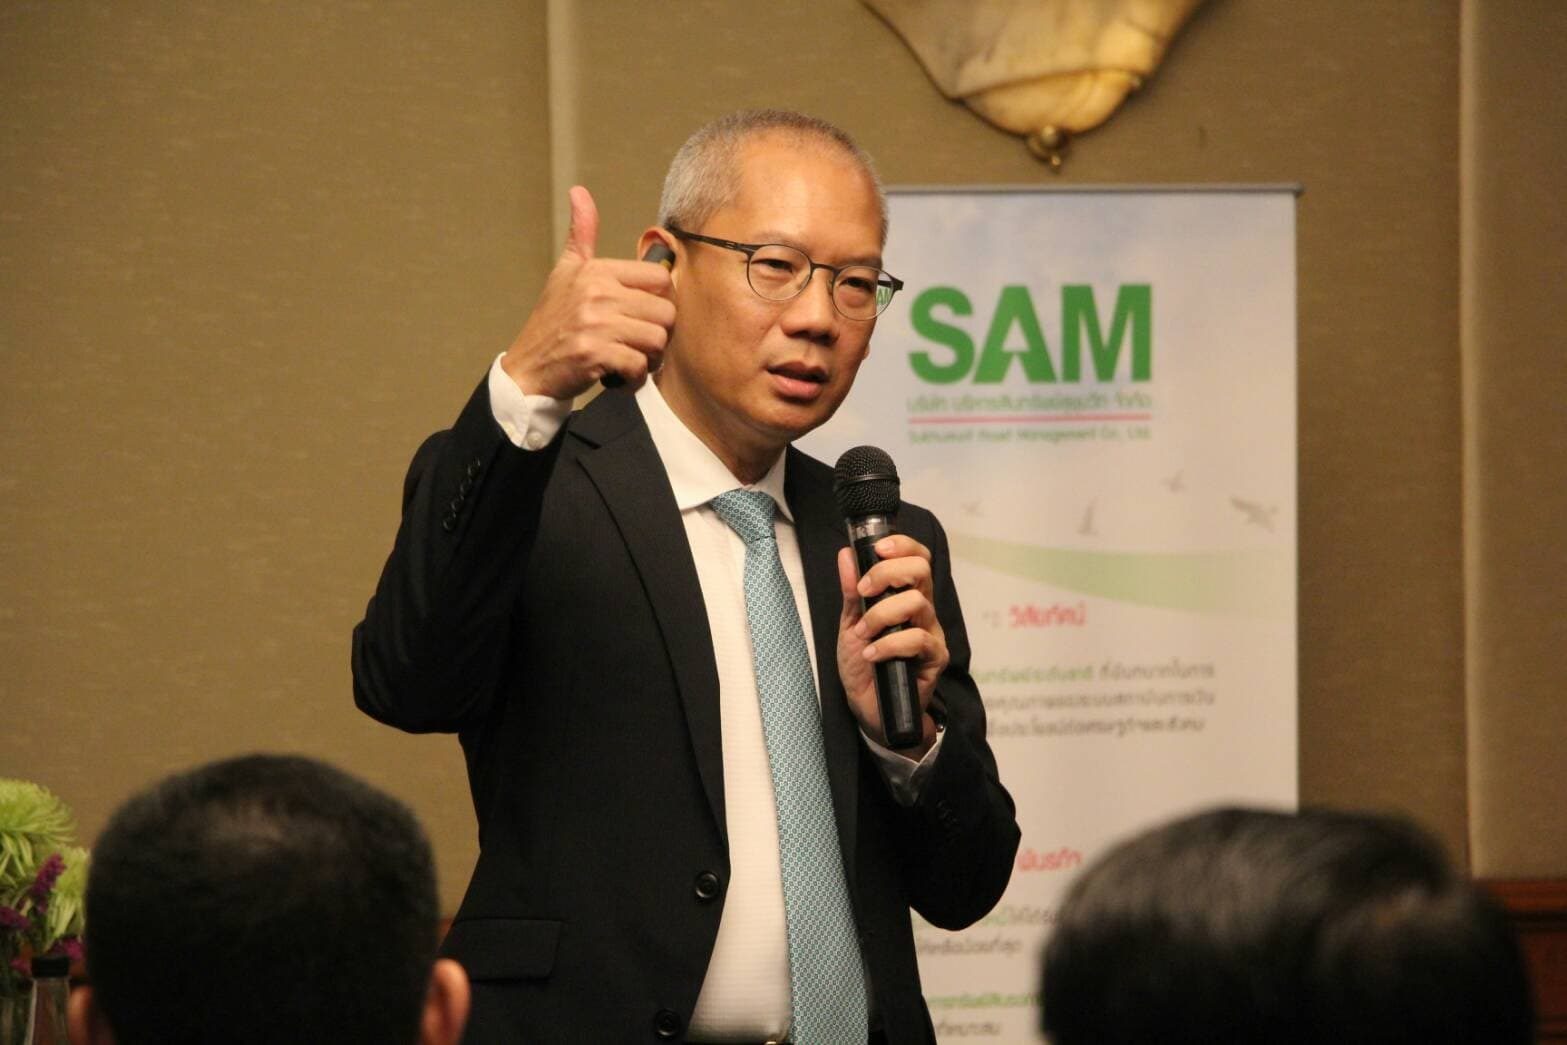 "SAM" สัญจรทั่วไทยเปิดบูธ “คลินิกแก้หนี้” พร้อมขนทรัพย์เอ็นพีเอทำเลดีขายตลอดเดือนก.ค.